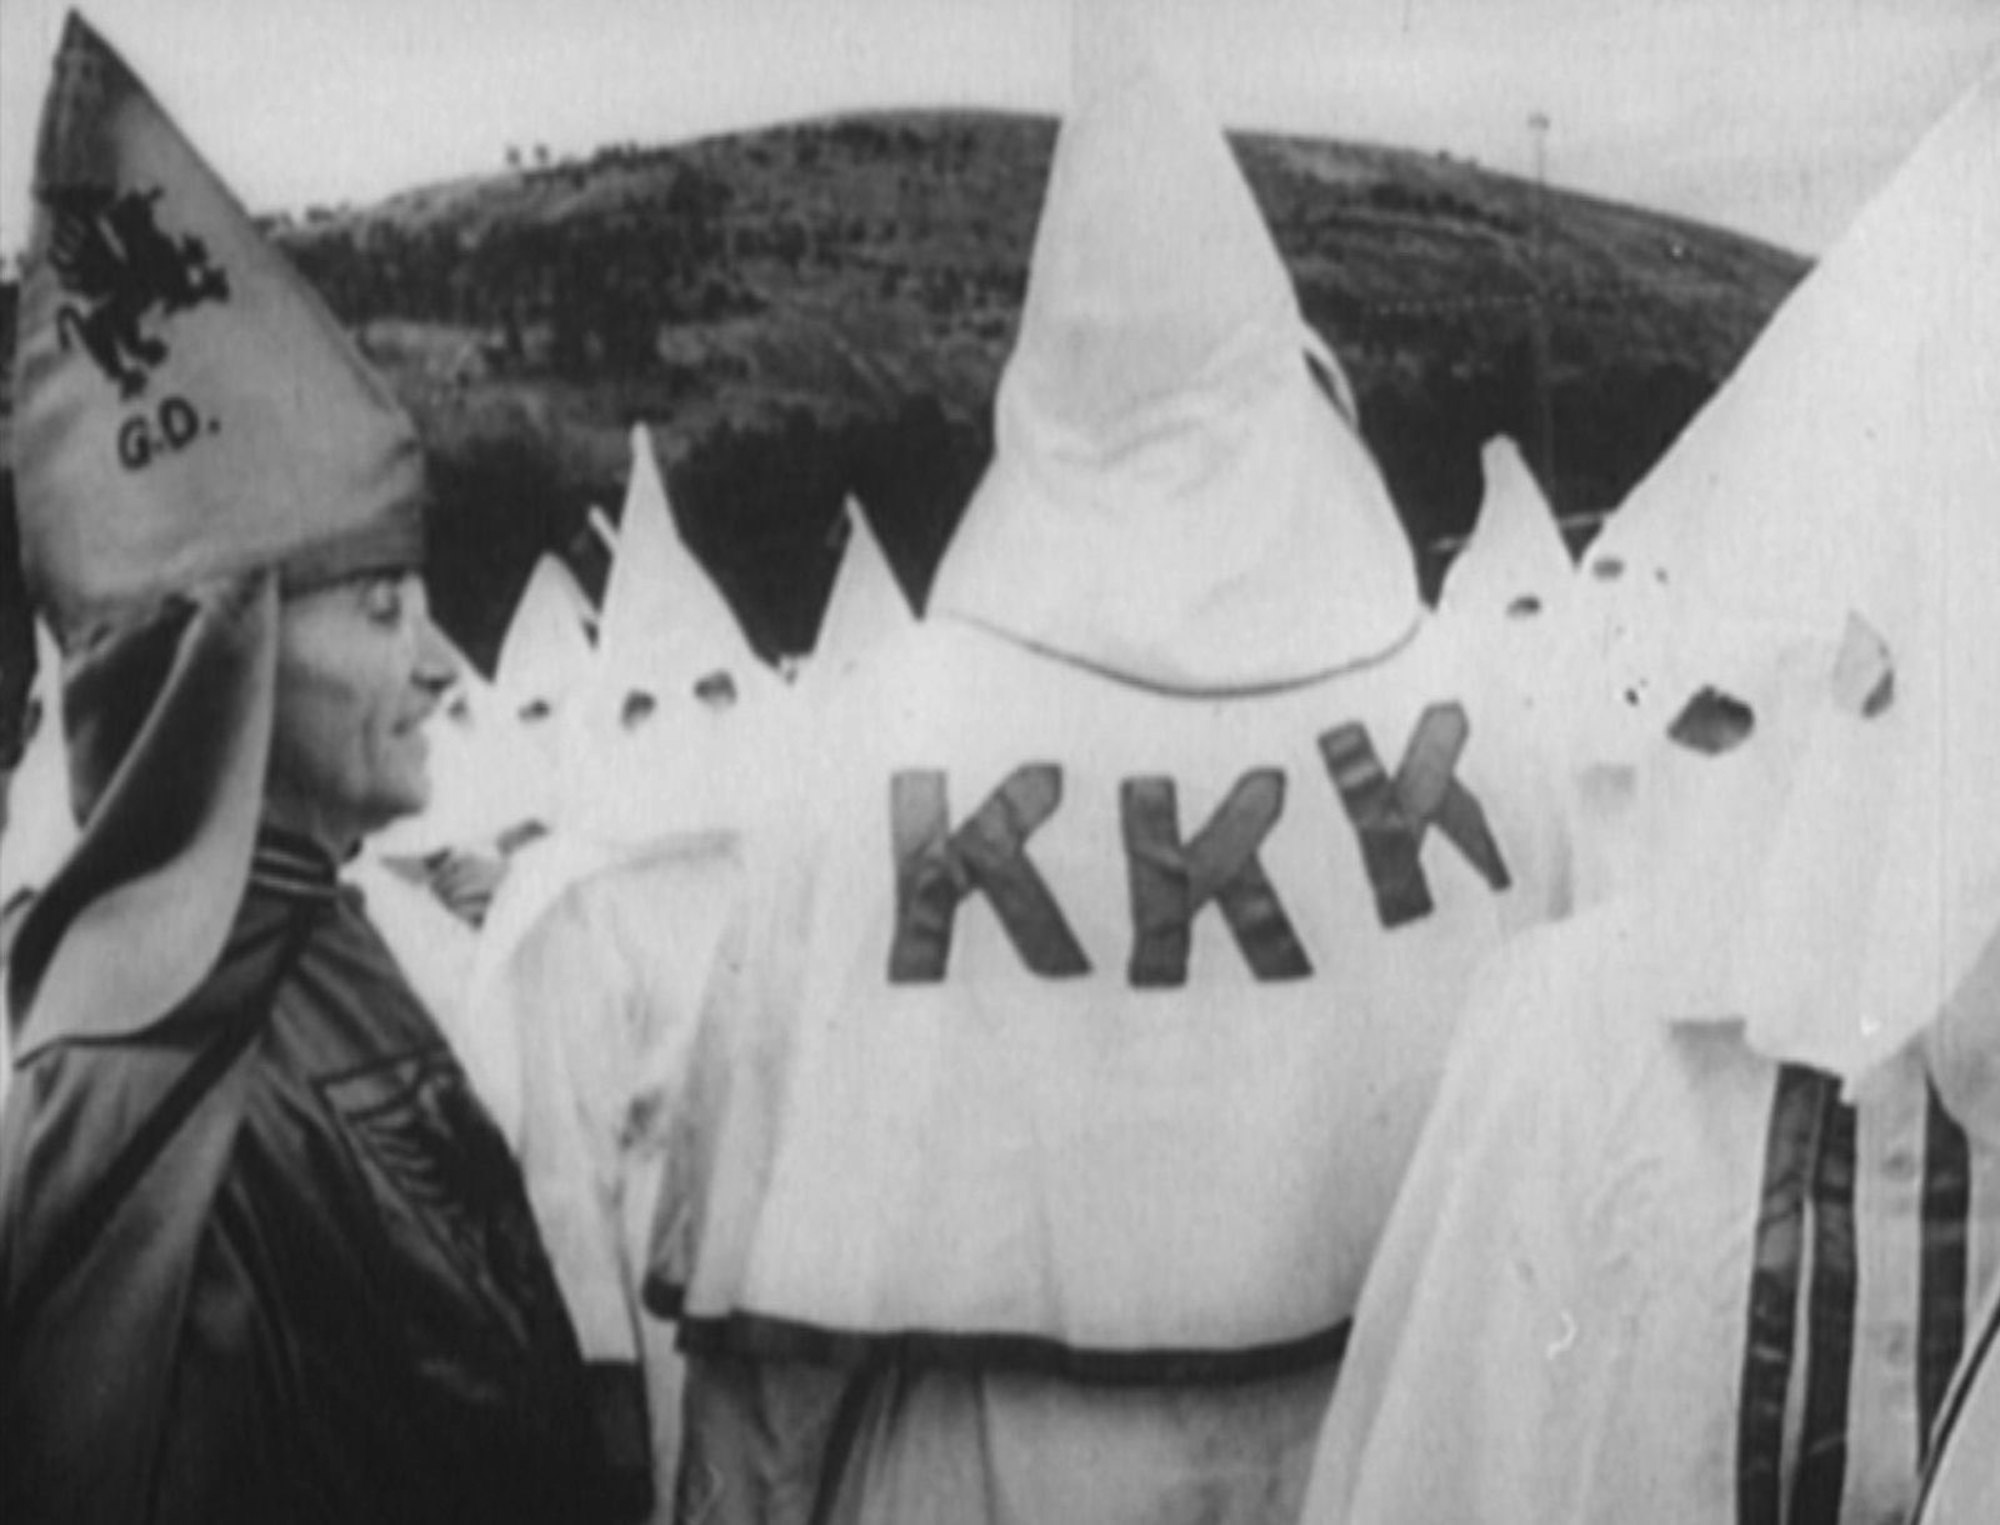 Die typischen Roben und Kapuzen des Ku-Klux-Klan: weiß und mit spitzen Kapuzen, unter denen nur die Augen zu sehen sind. (Bild: ZDF/RMC PRODUCTION)